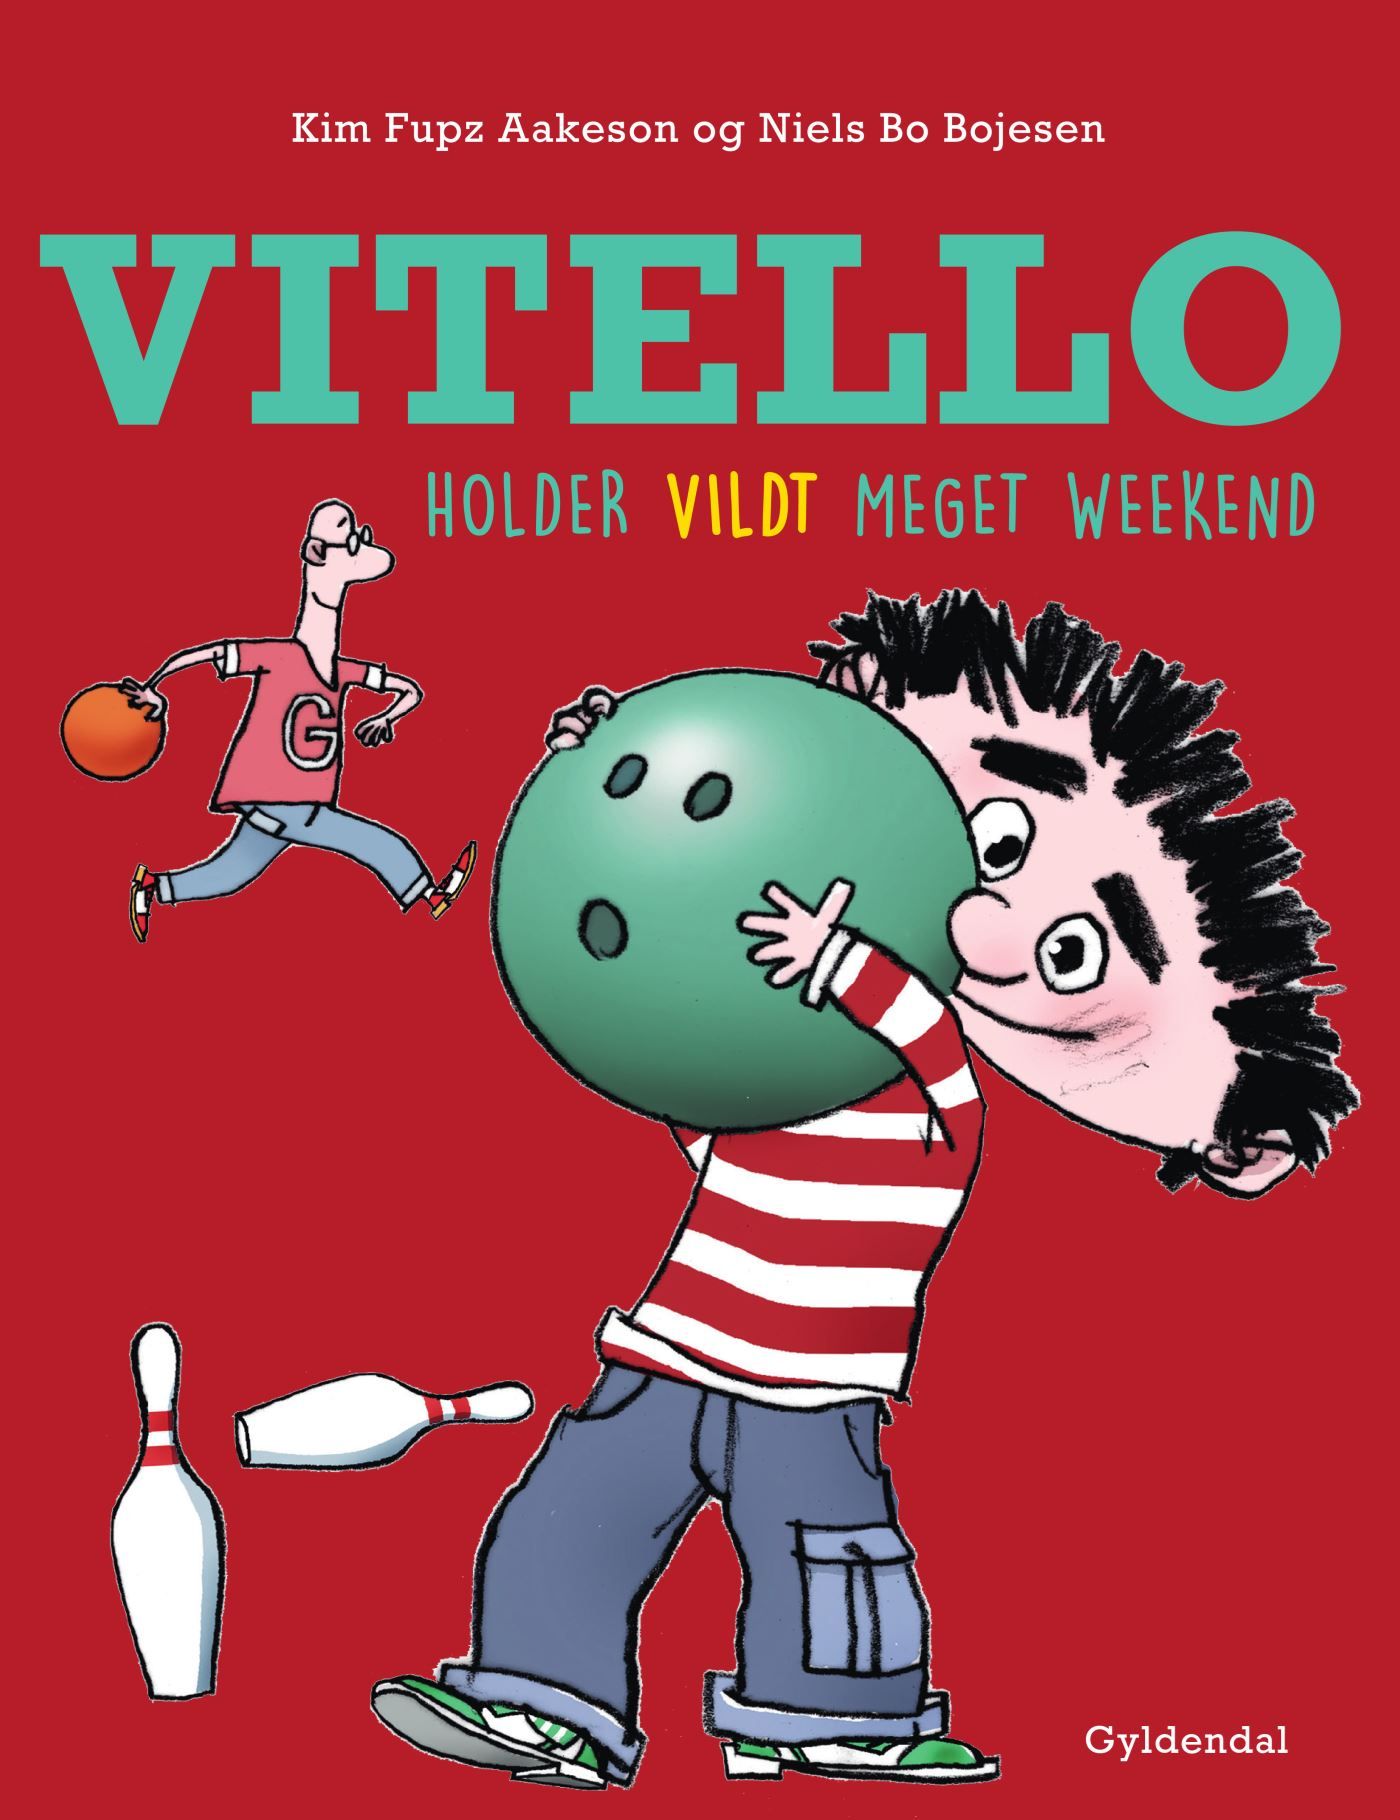 Vitello holder vildt meget weekend, lydbog af Niels Bo Bojesen, Kim Fupz Aakeson